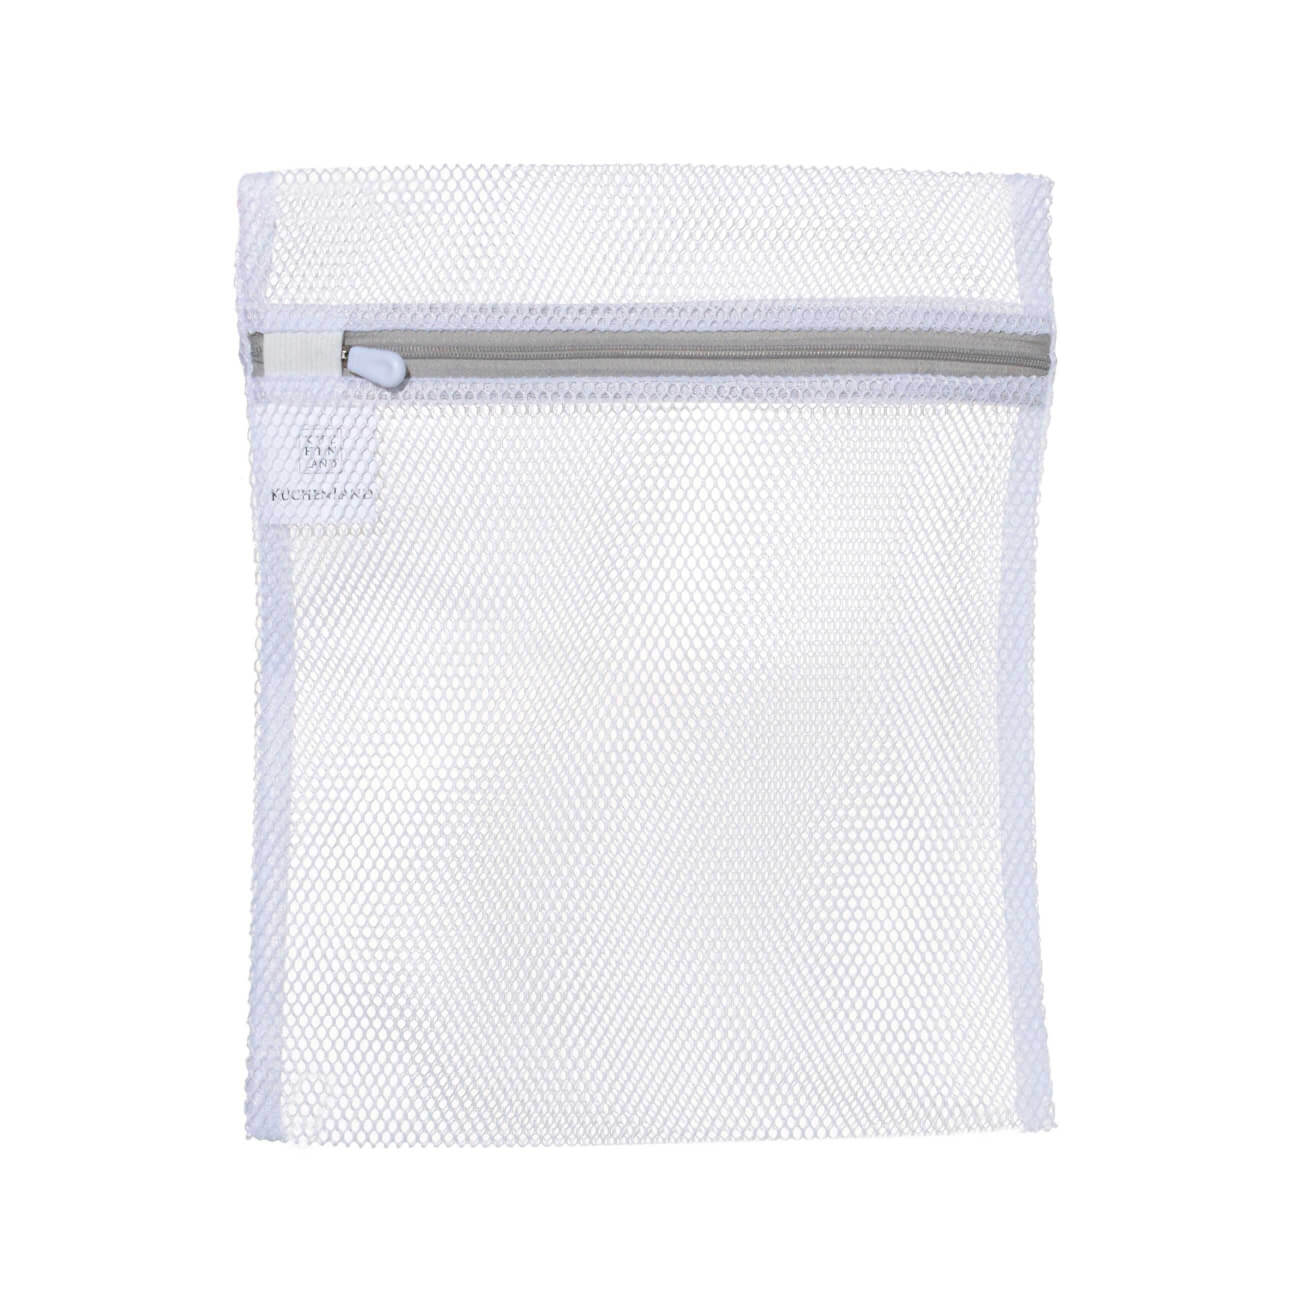 Мешок для стирки нижнего белья, 25х30 см, полиэстер, бело-серый, Safety мешок для стирки одежды 40х50 см полиэстер safety plus